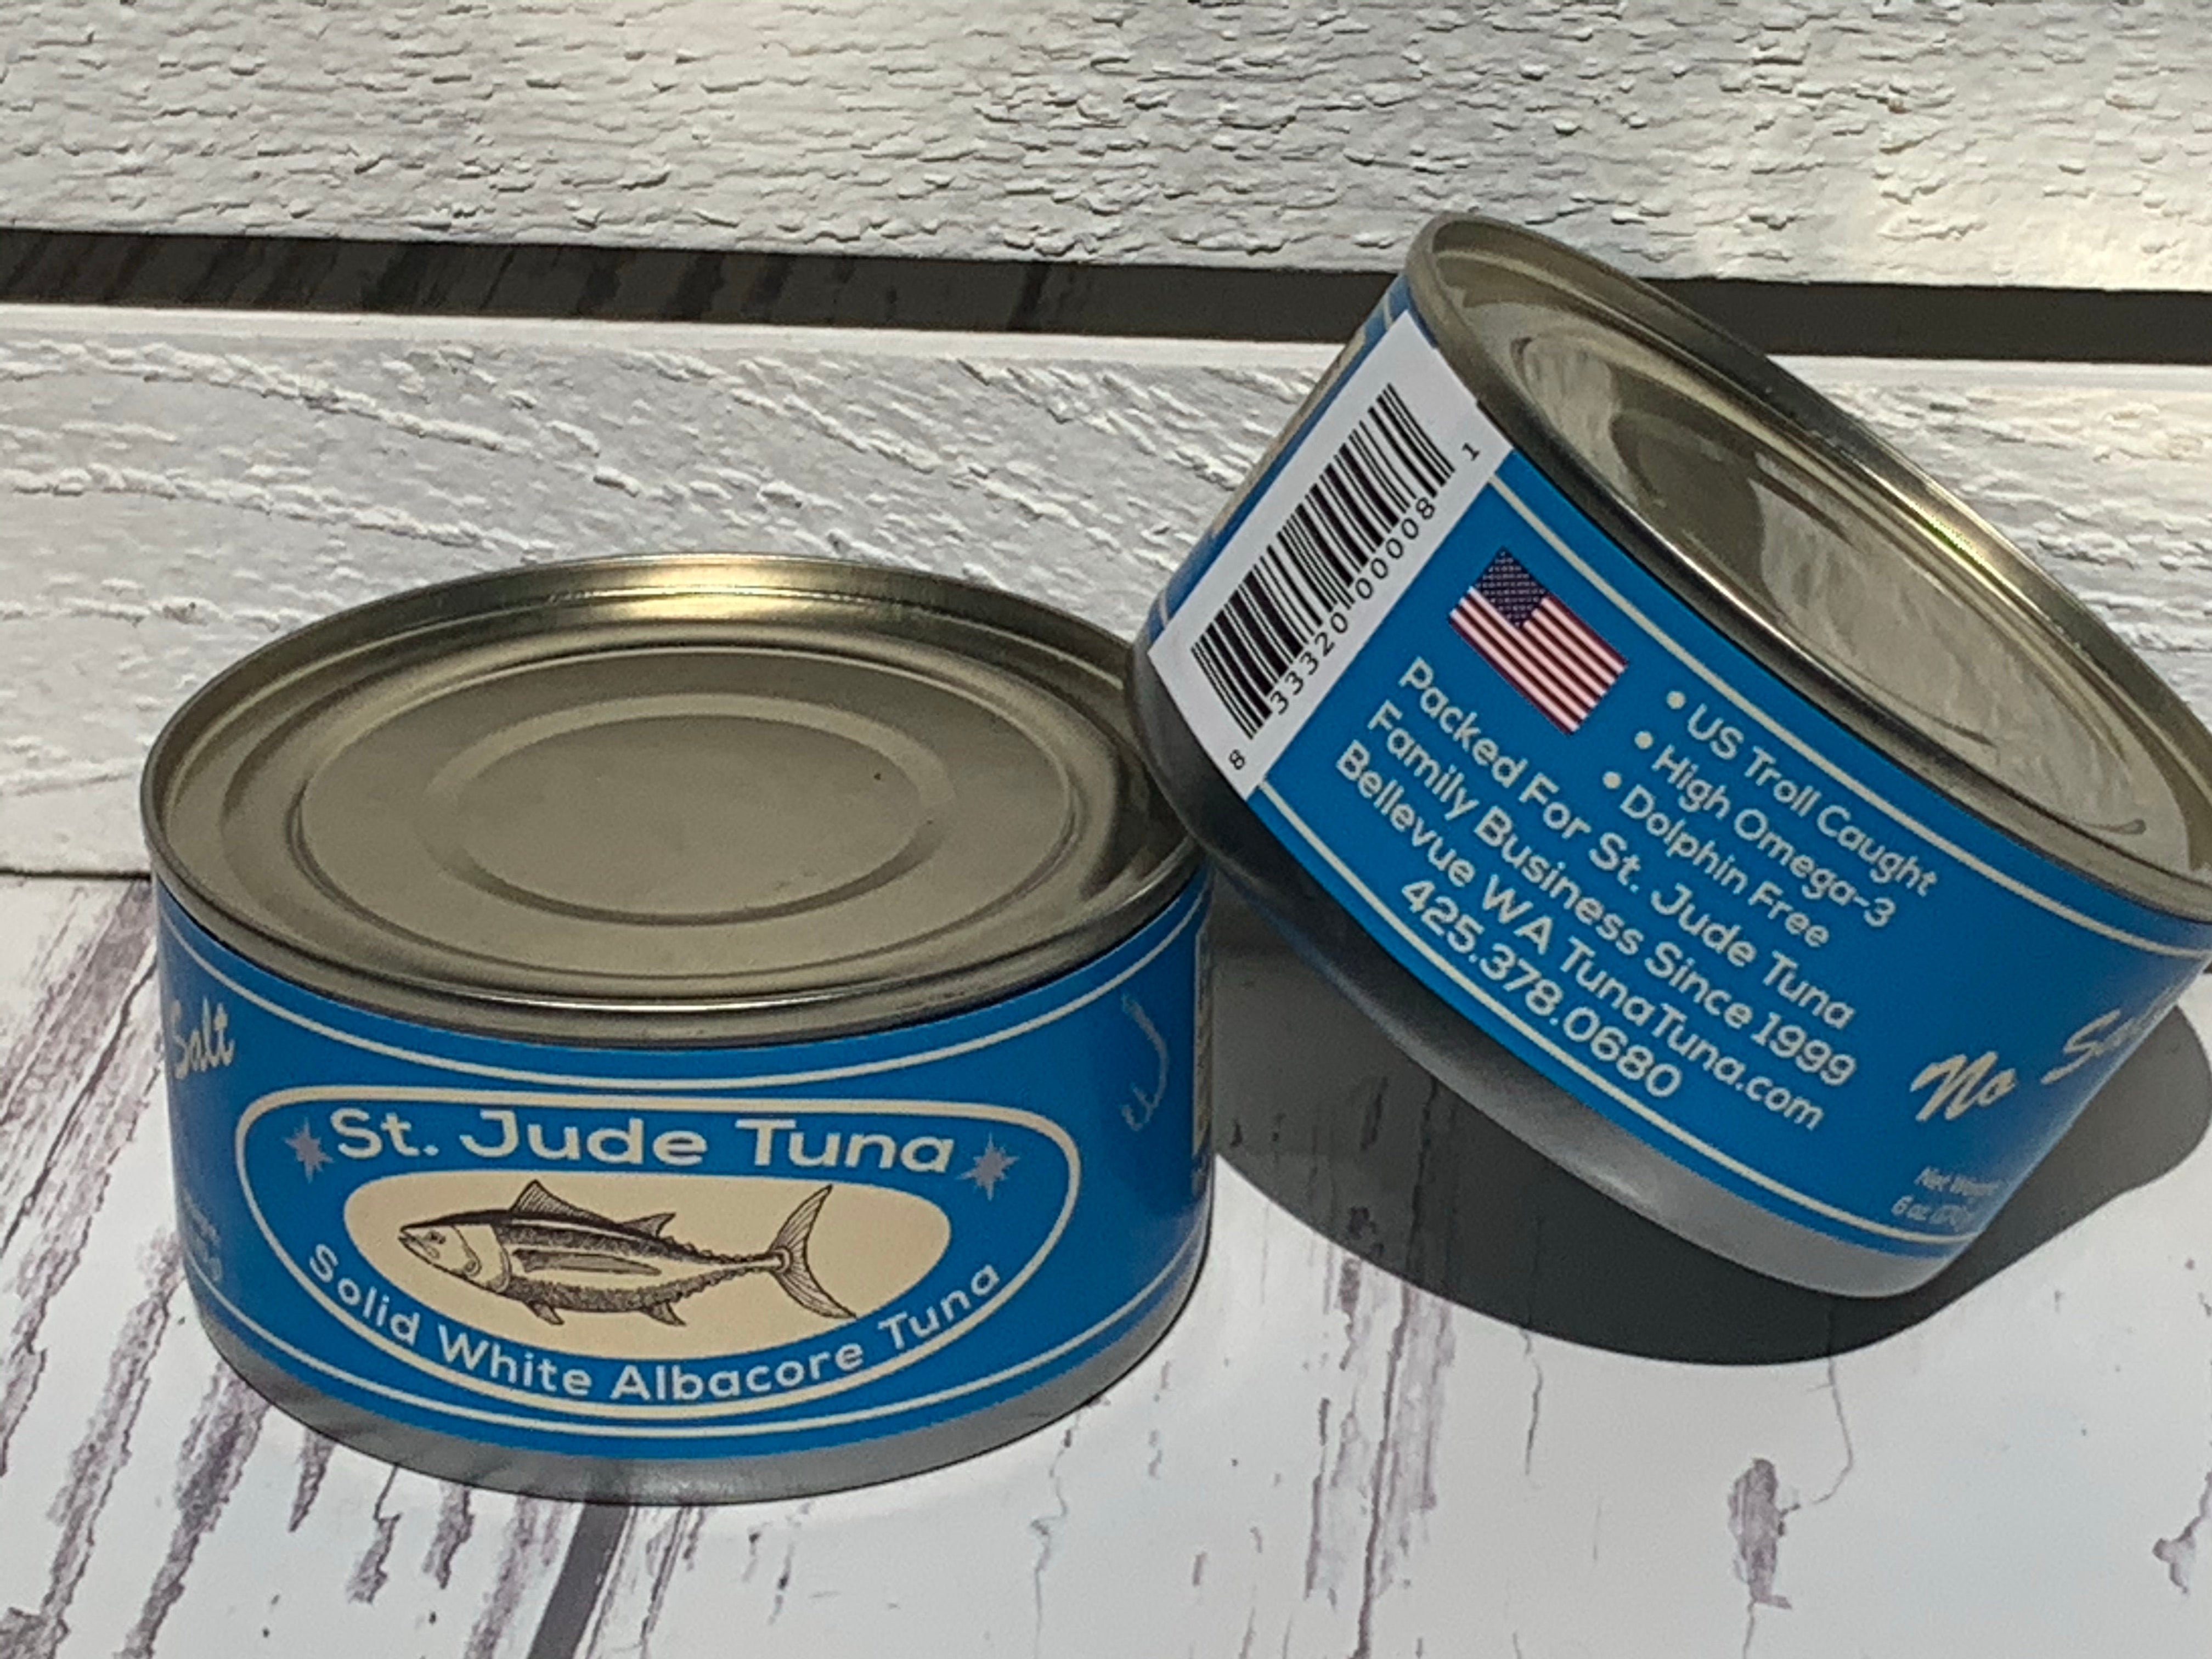 Albacore Tuna to Perfection